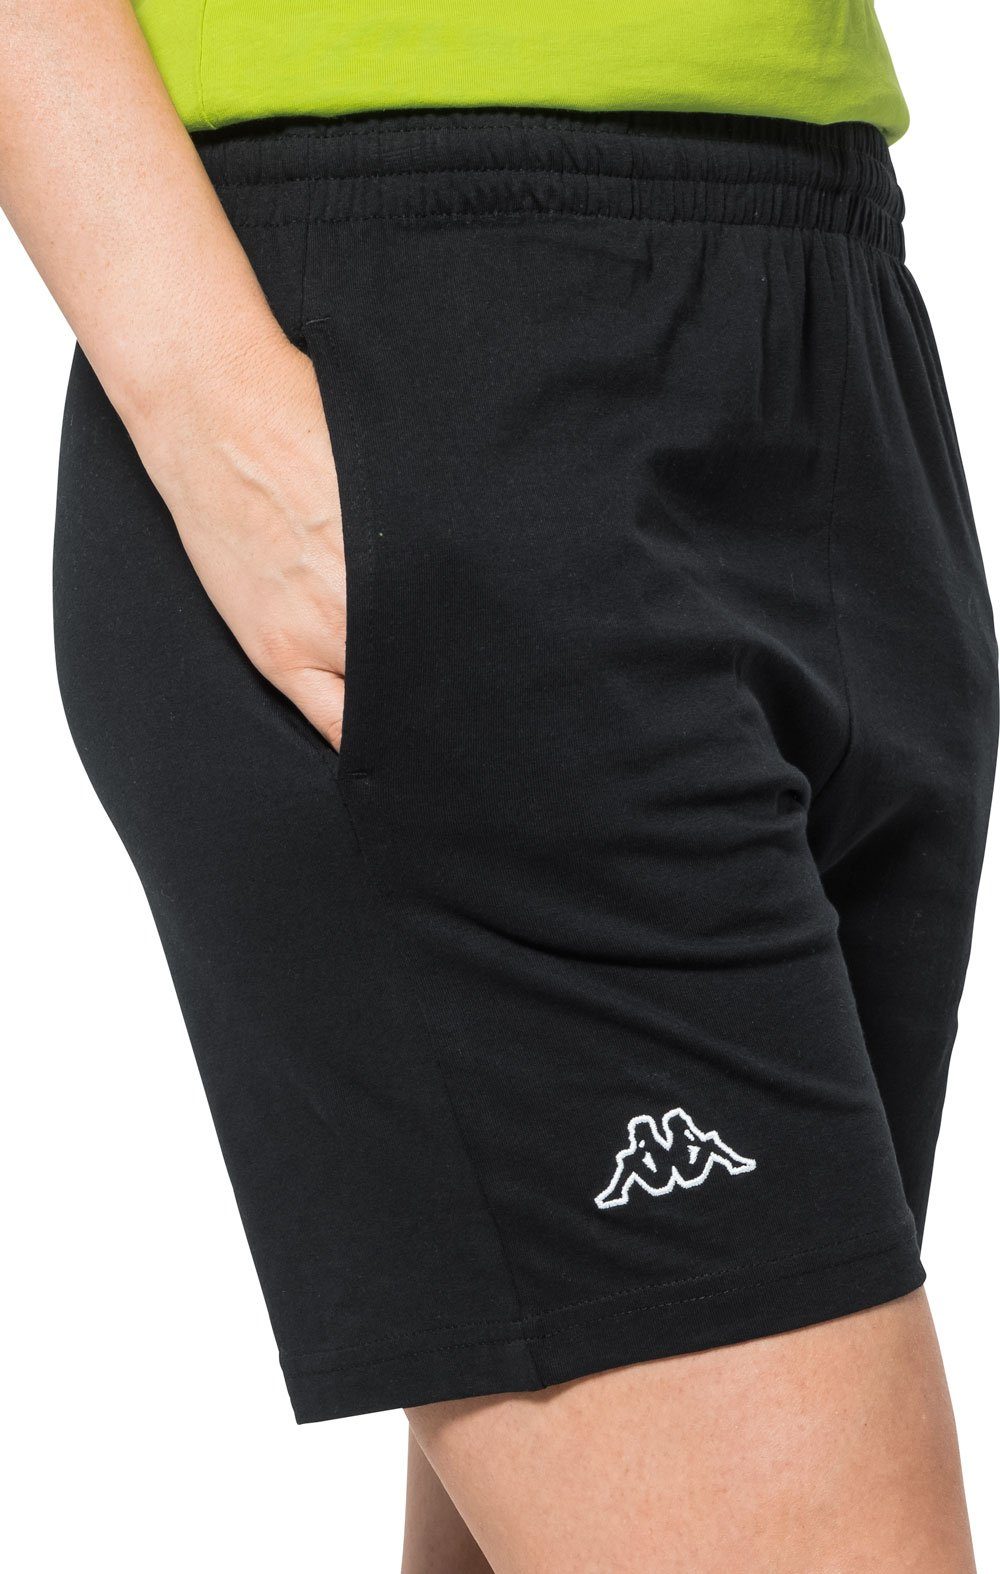 Kappa Shorts unisex, aus formstabiler schwarz Baumwolle